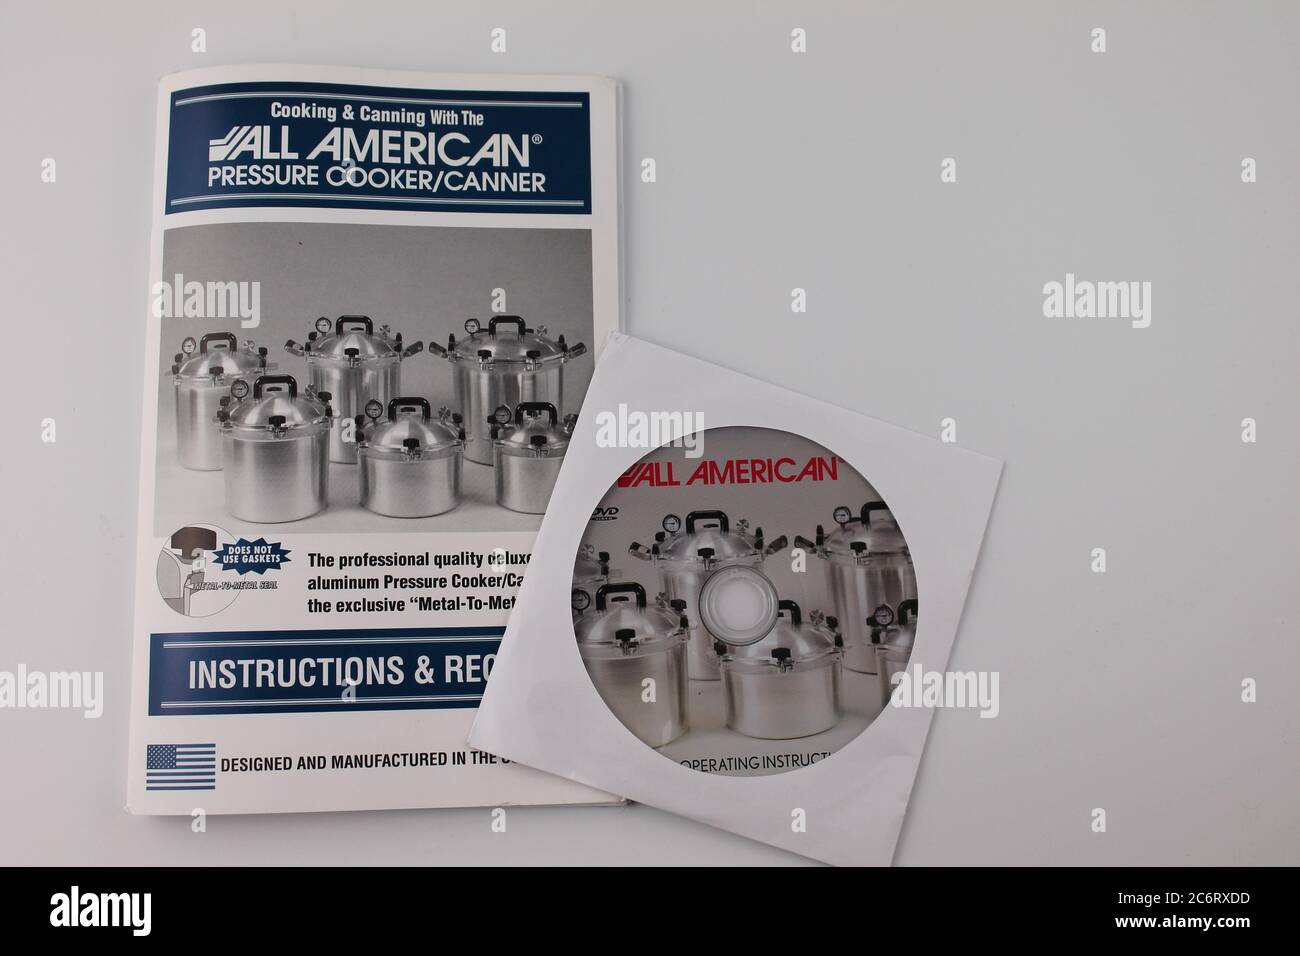 Ll american Pressure Cooker Canner Anleitungen und Bedienungsanleitung auf CD. Isoliert auf weißem Hintergrund im vertikalen Format Stockfoto